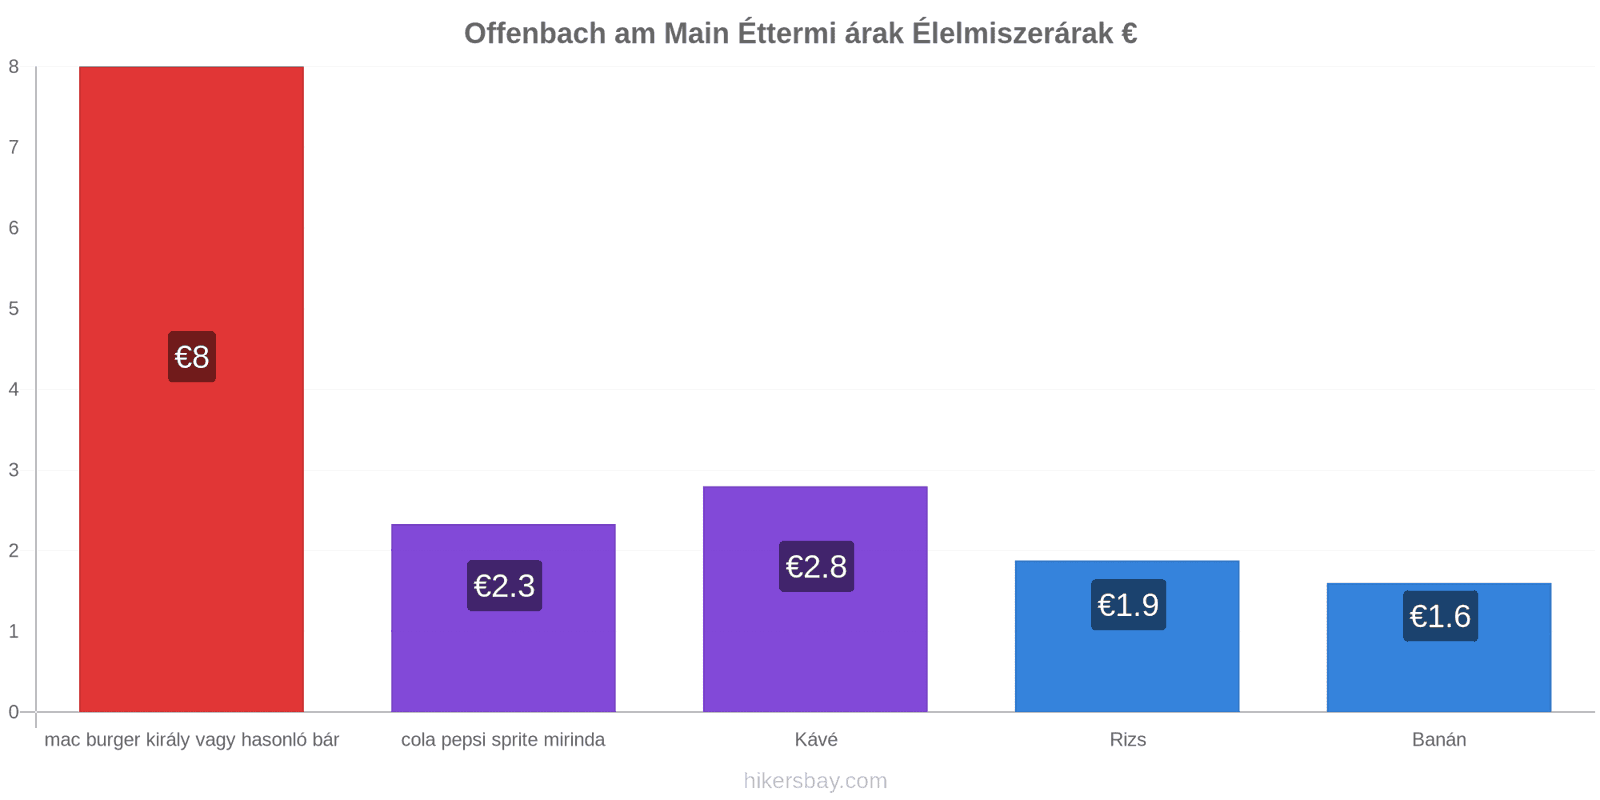 Offenbach am Main ár változások hikersbay.com